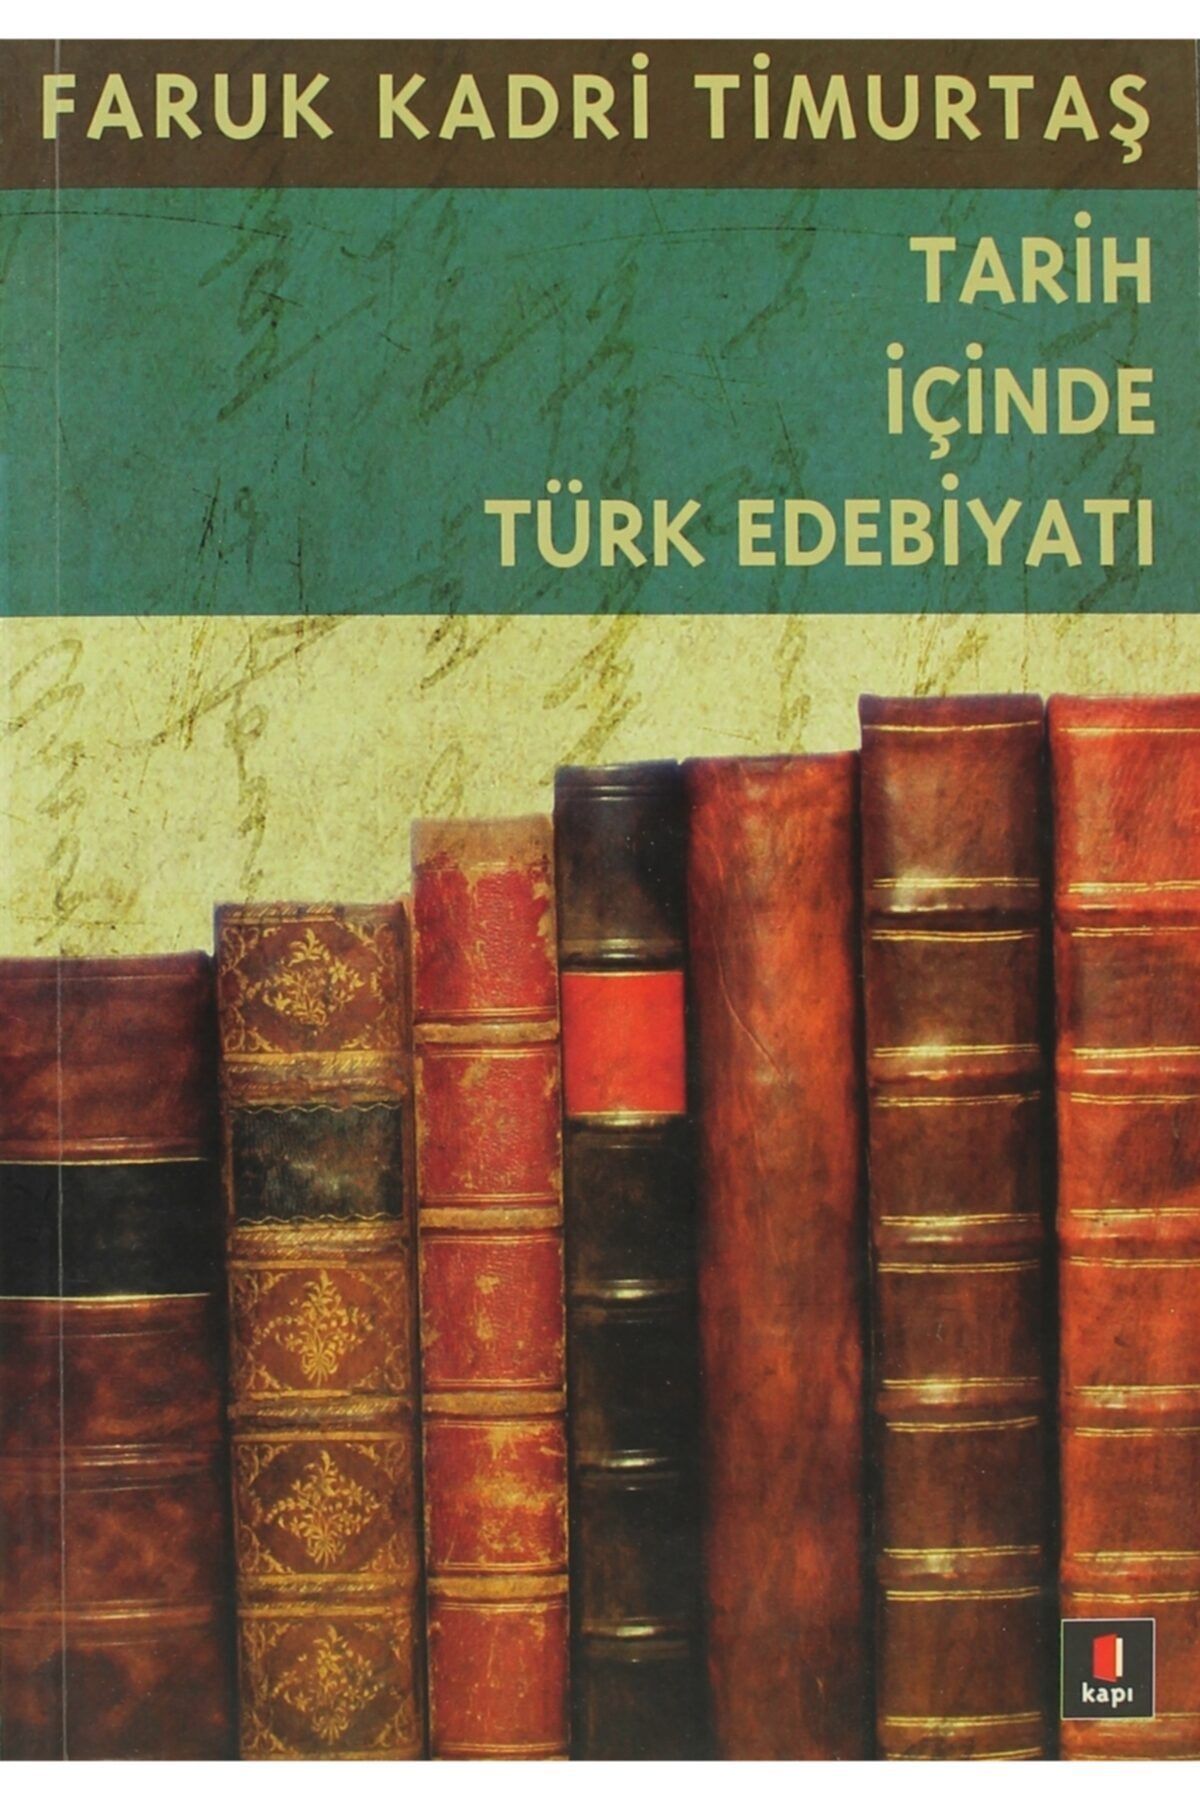 Kapı Yayınları Tarih Içinde Türk Edebiyatı - Faruk Kadri Timurtaş 9786054322985